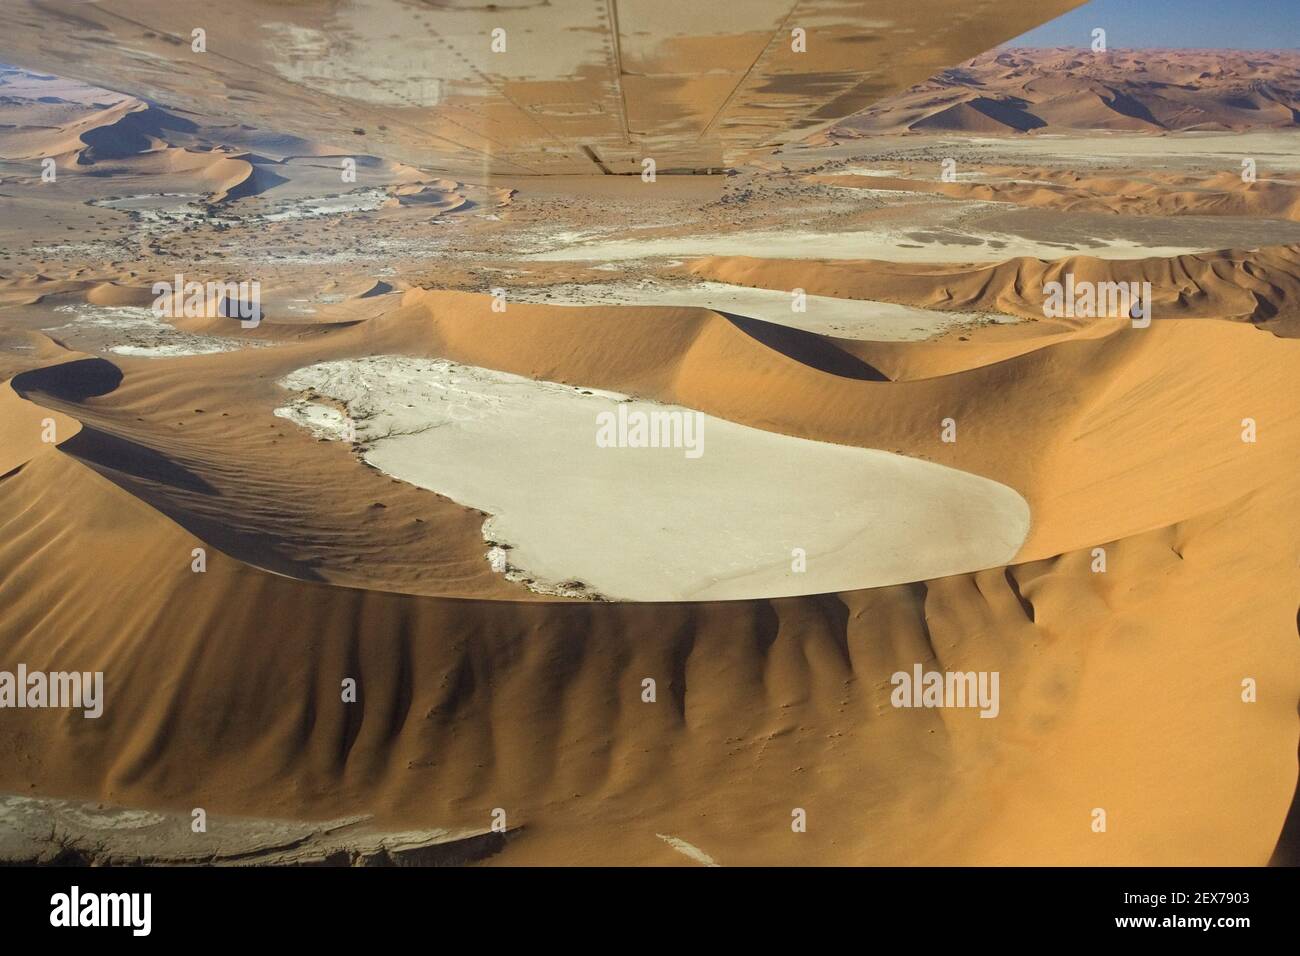 Vue aérienne du plateau d'argile de Deadvlei, parc national Namib Naukluft, Namibie, Afrique, vue aérienne du plateau d'argile, Dead Vlei Namib Nau Banque D'Images